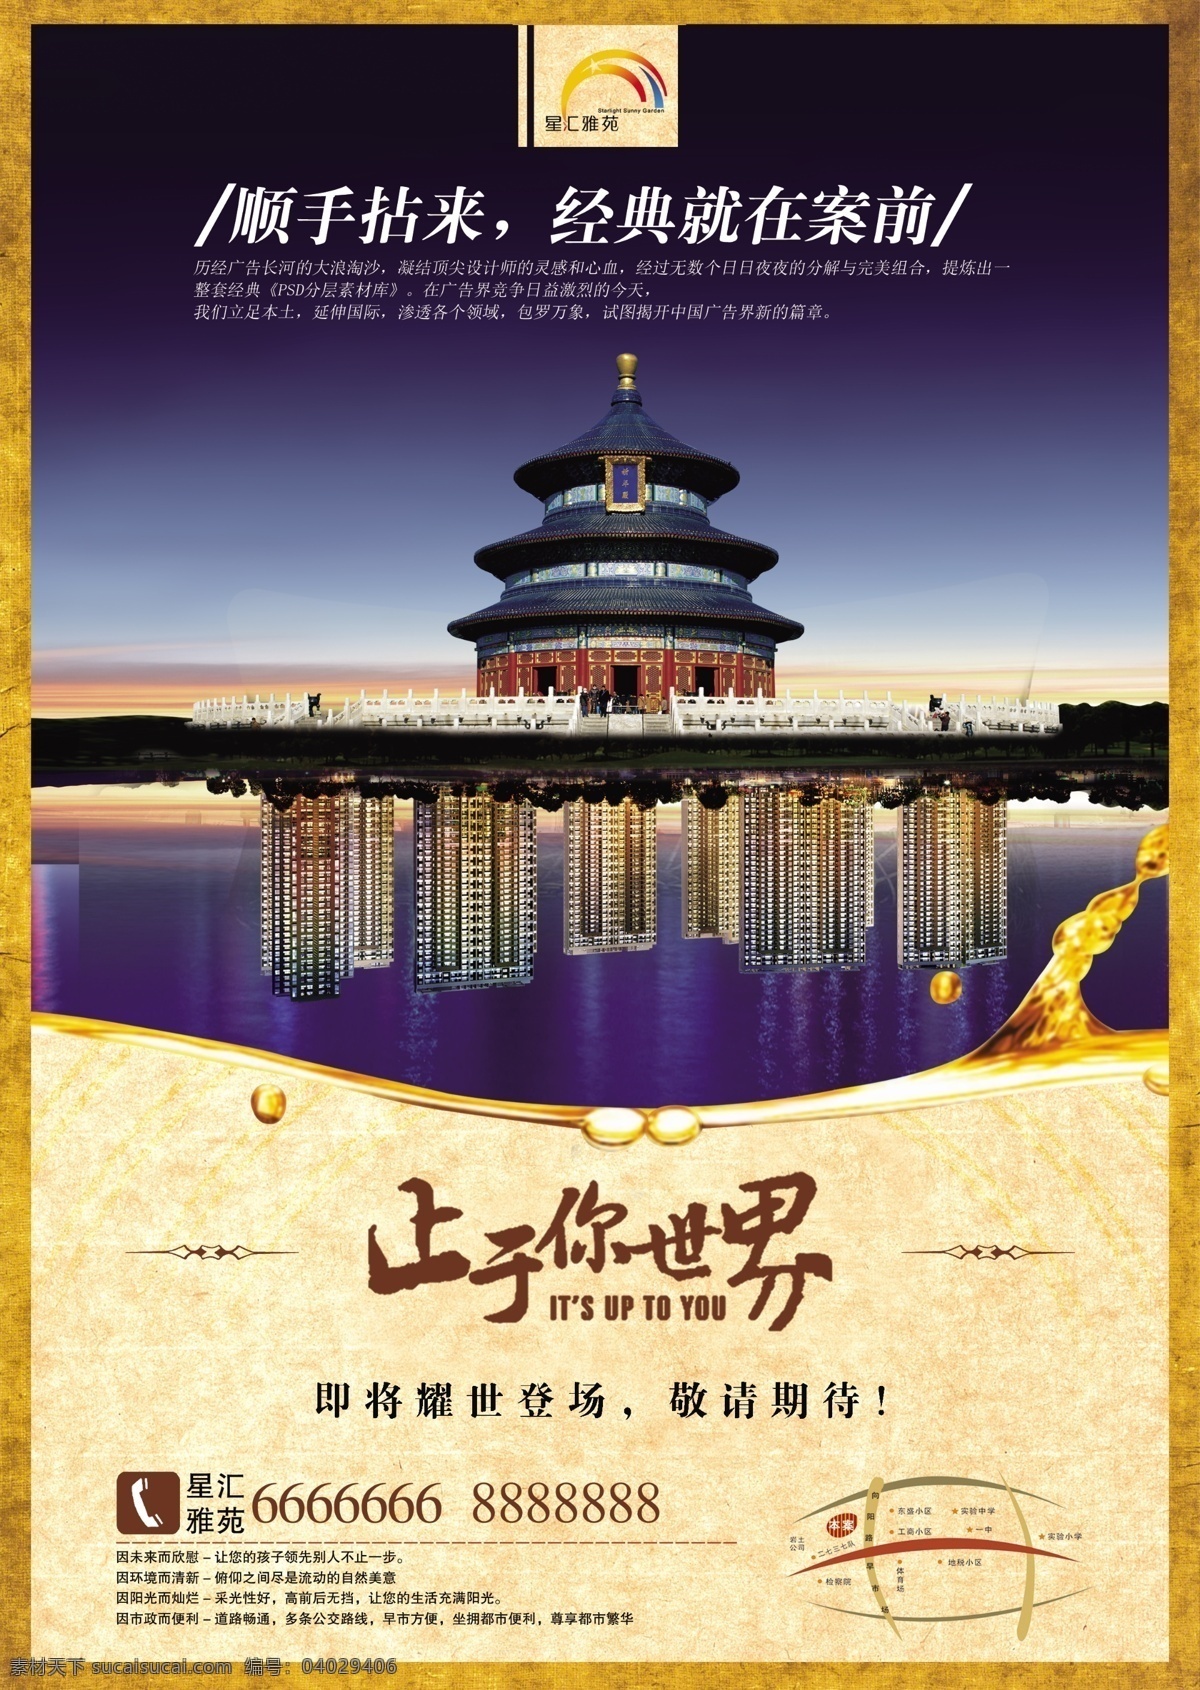 中国 风 广告 传统文化 地产广告 房地产 房地产广告 古典 古典文化 中国风房产 海报